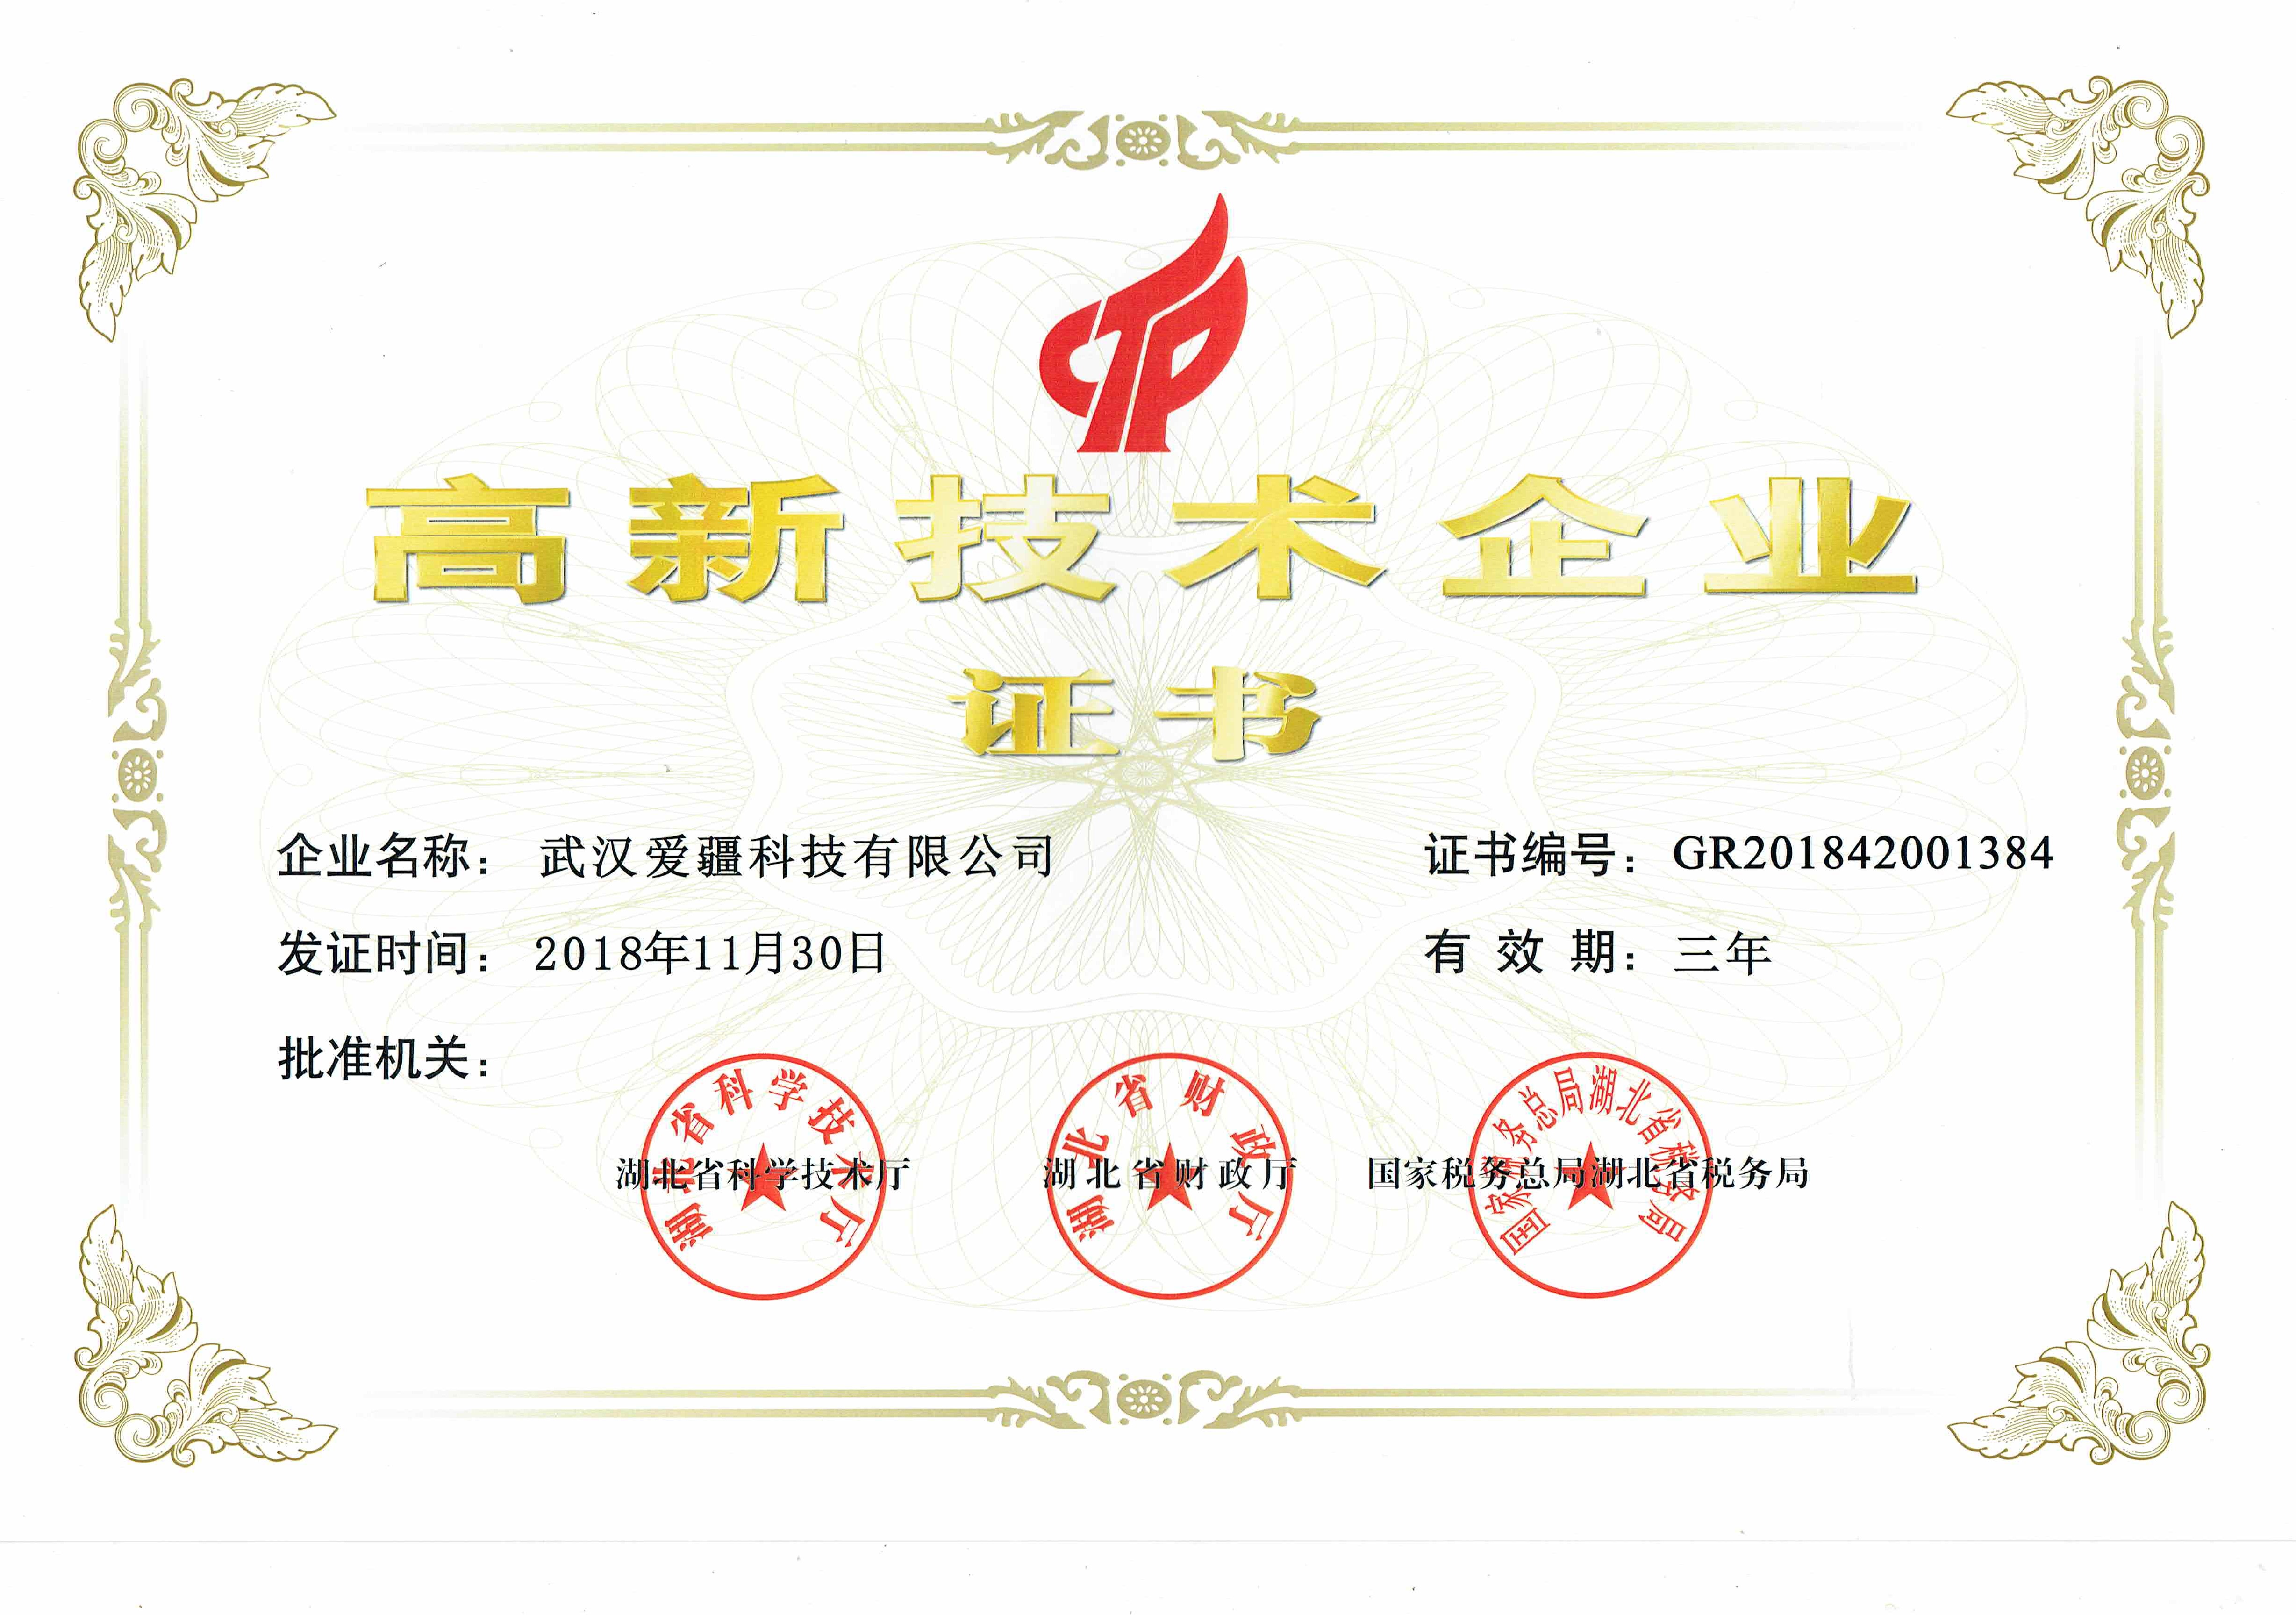 中山武汉爱疆科技获得 高新技术企业 认证